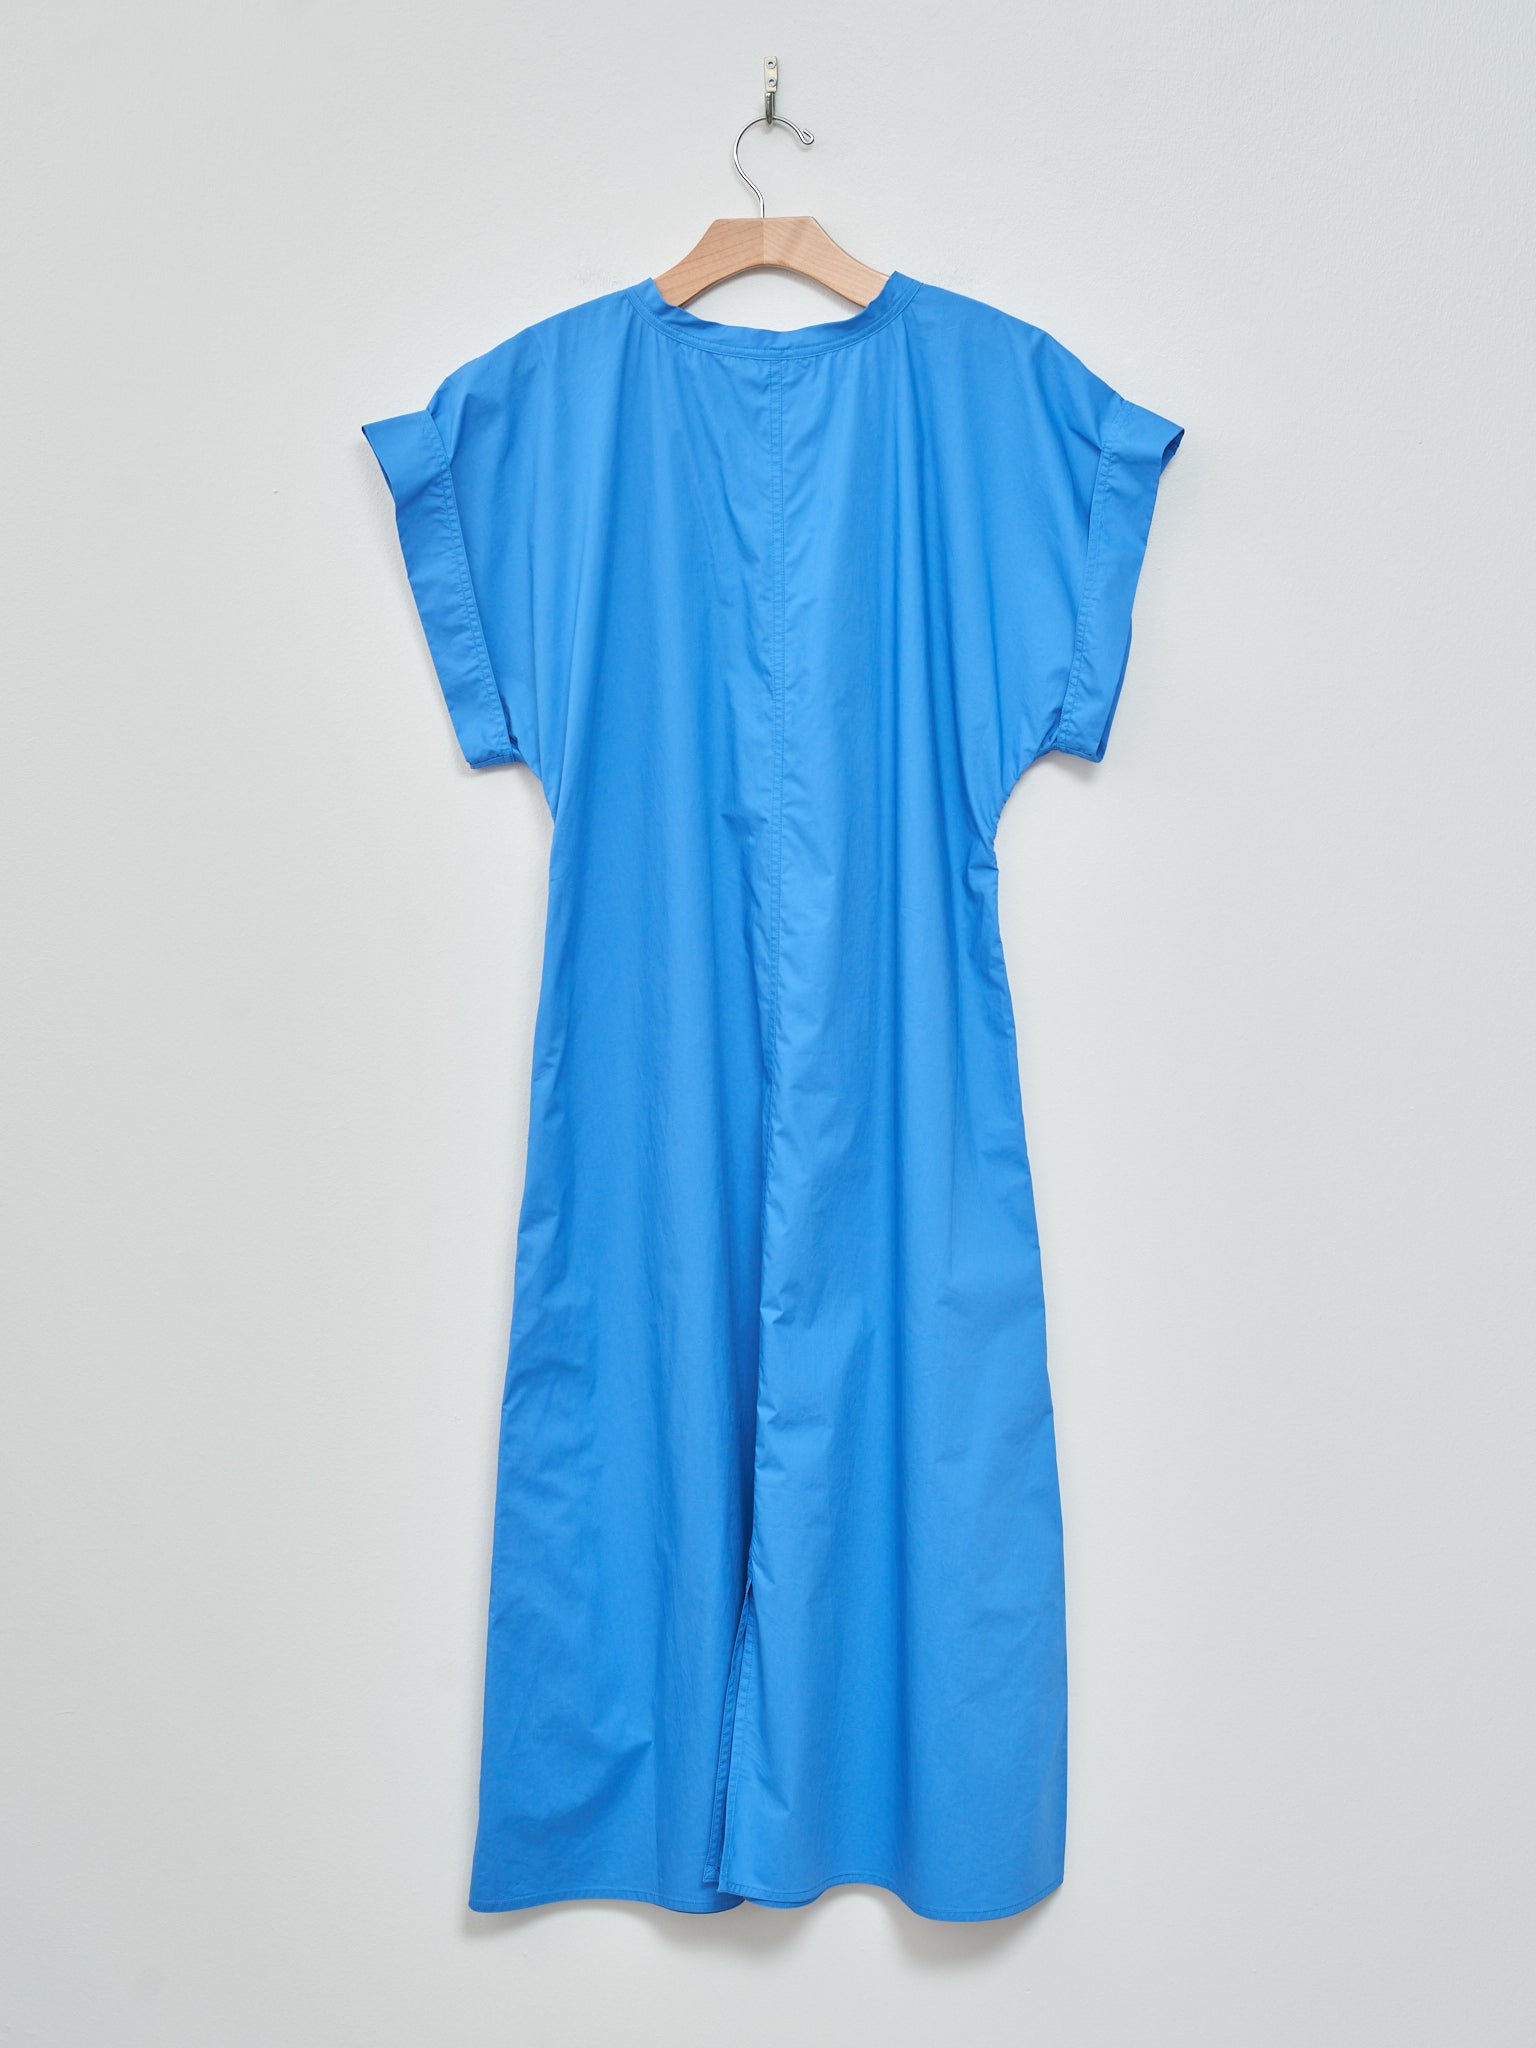 Namu Shop - Sofie D'hoore Ducie Dress - Bluette